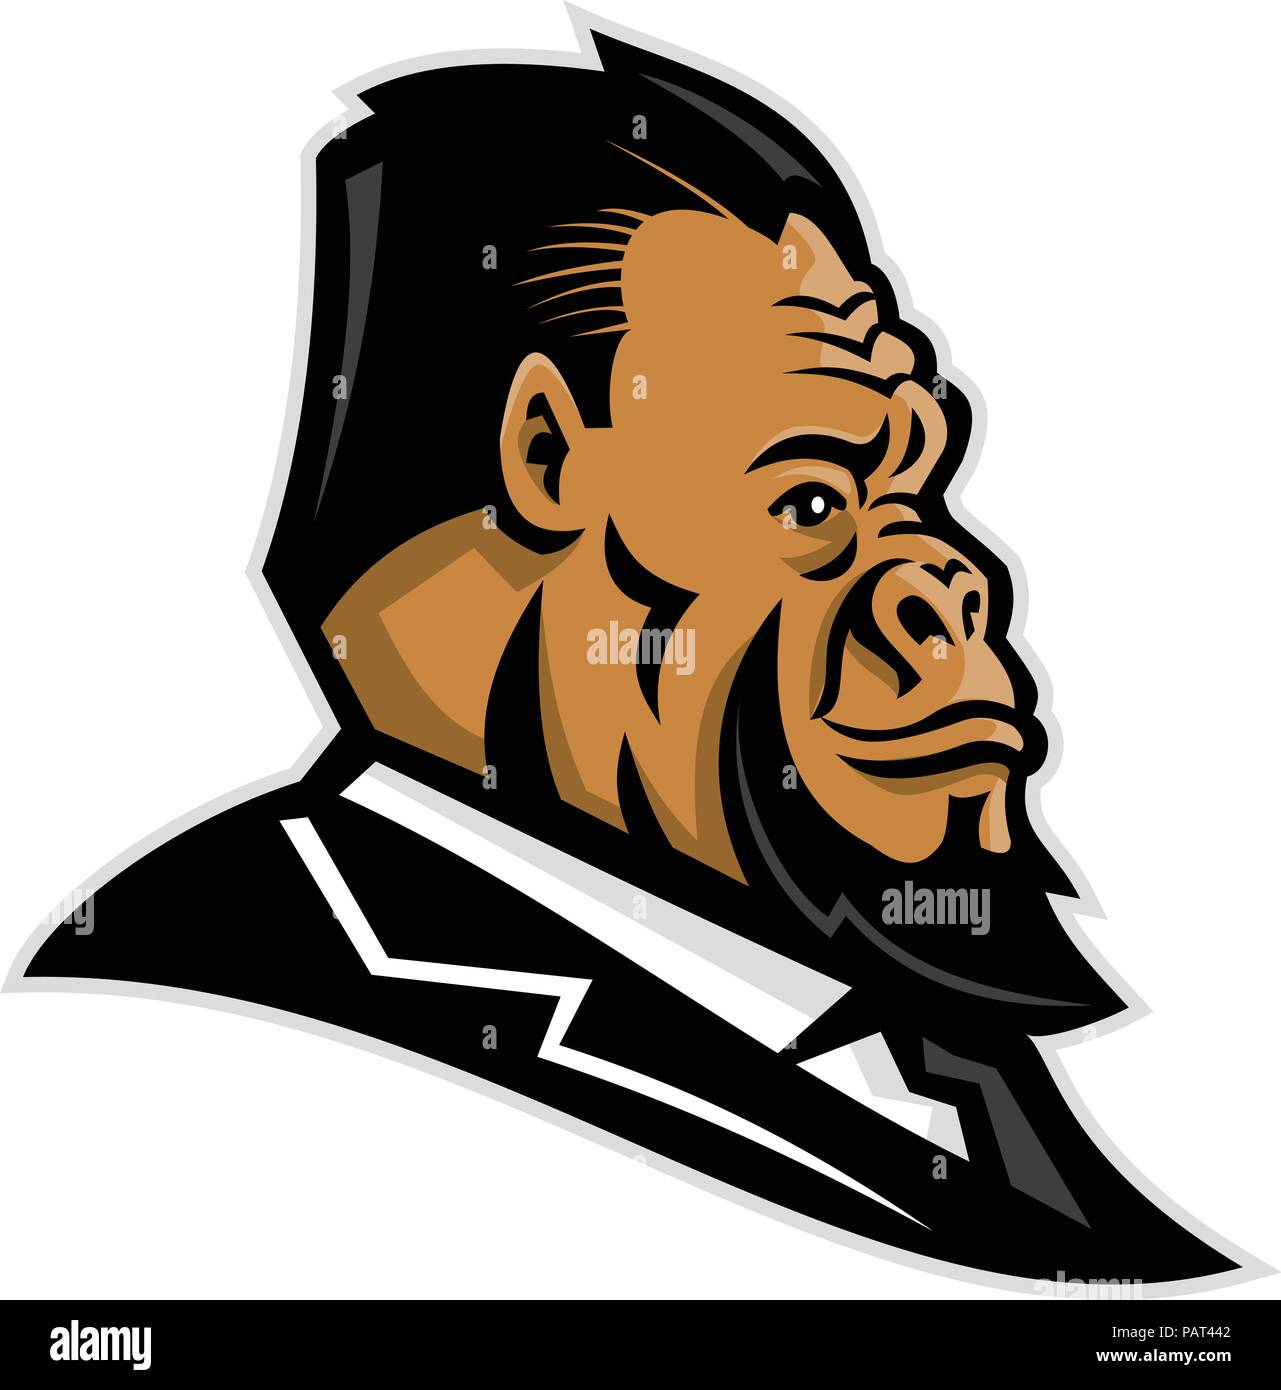 Maskottchen Symbol Abbildung: Kopf eines gepflegten Gorilla, ape, Primas, caveman, Neanderthal oder primitiven Mann mit Anzug und Krawatte gesehen Stock Vektor